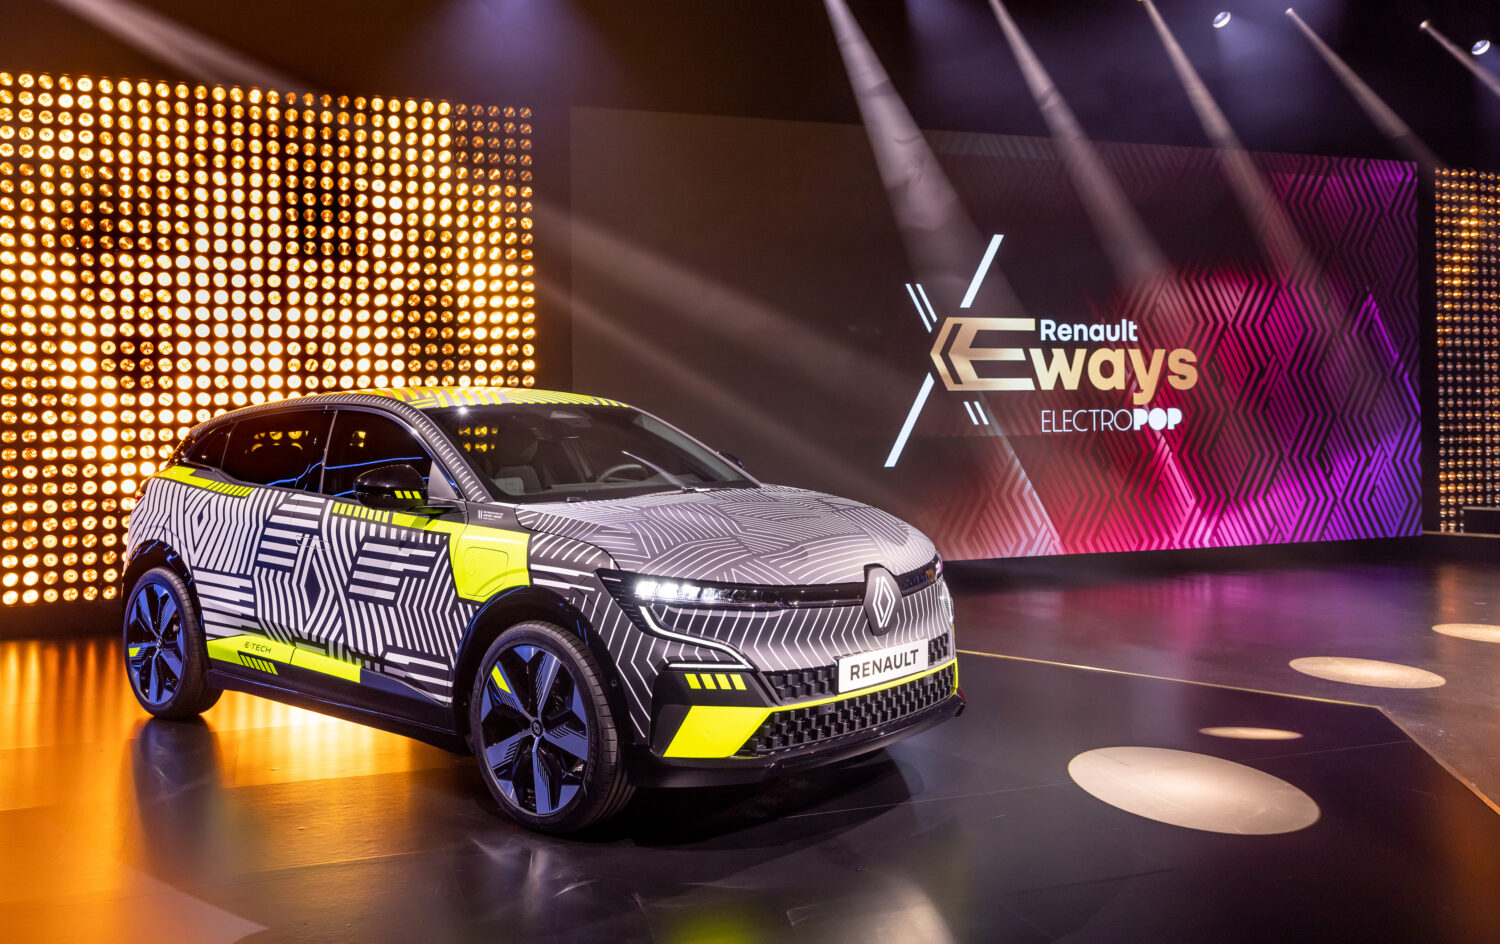 2021 - Conférence de presse Renault eWays